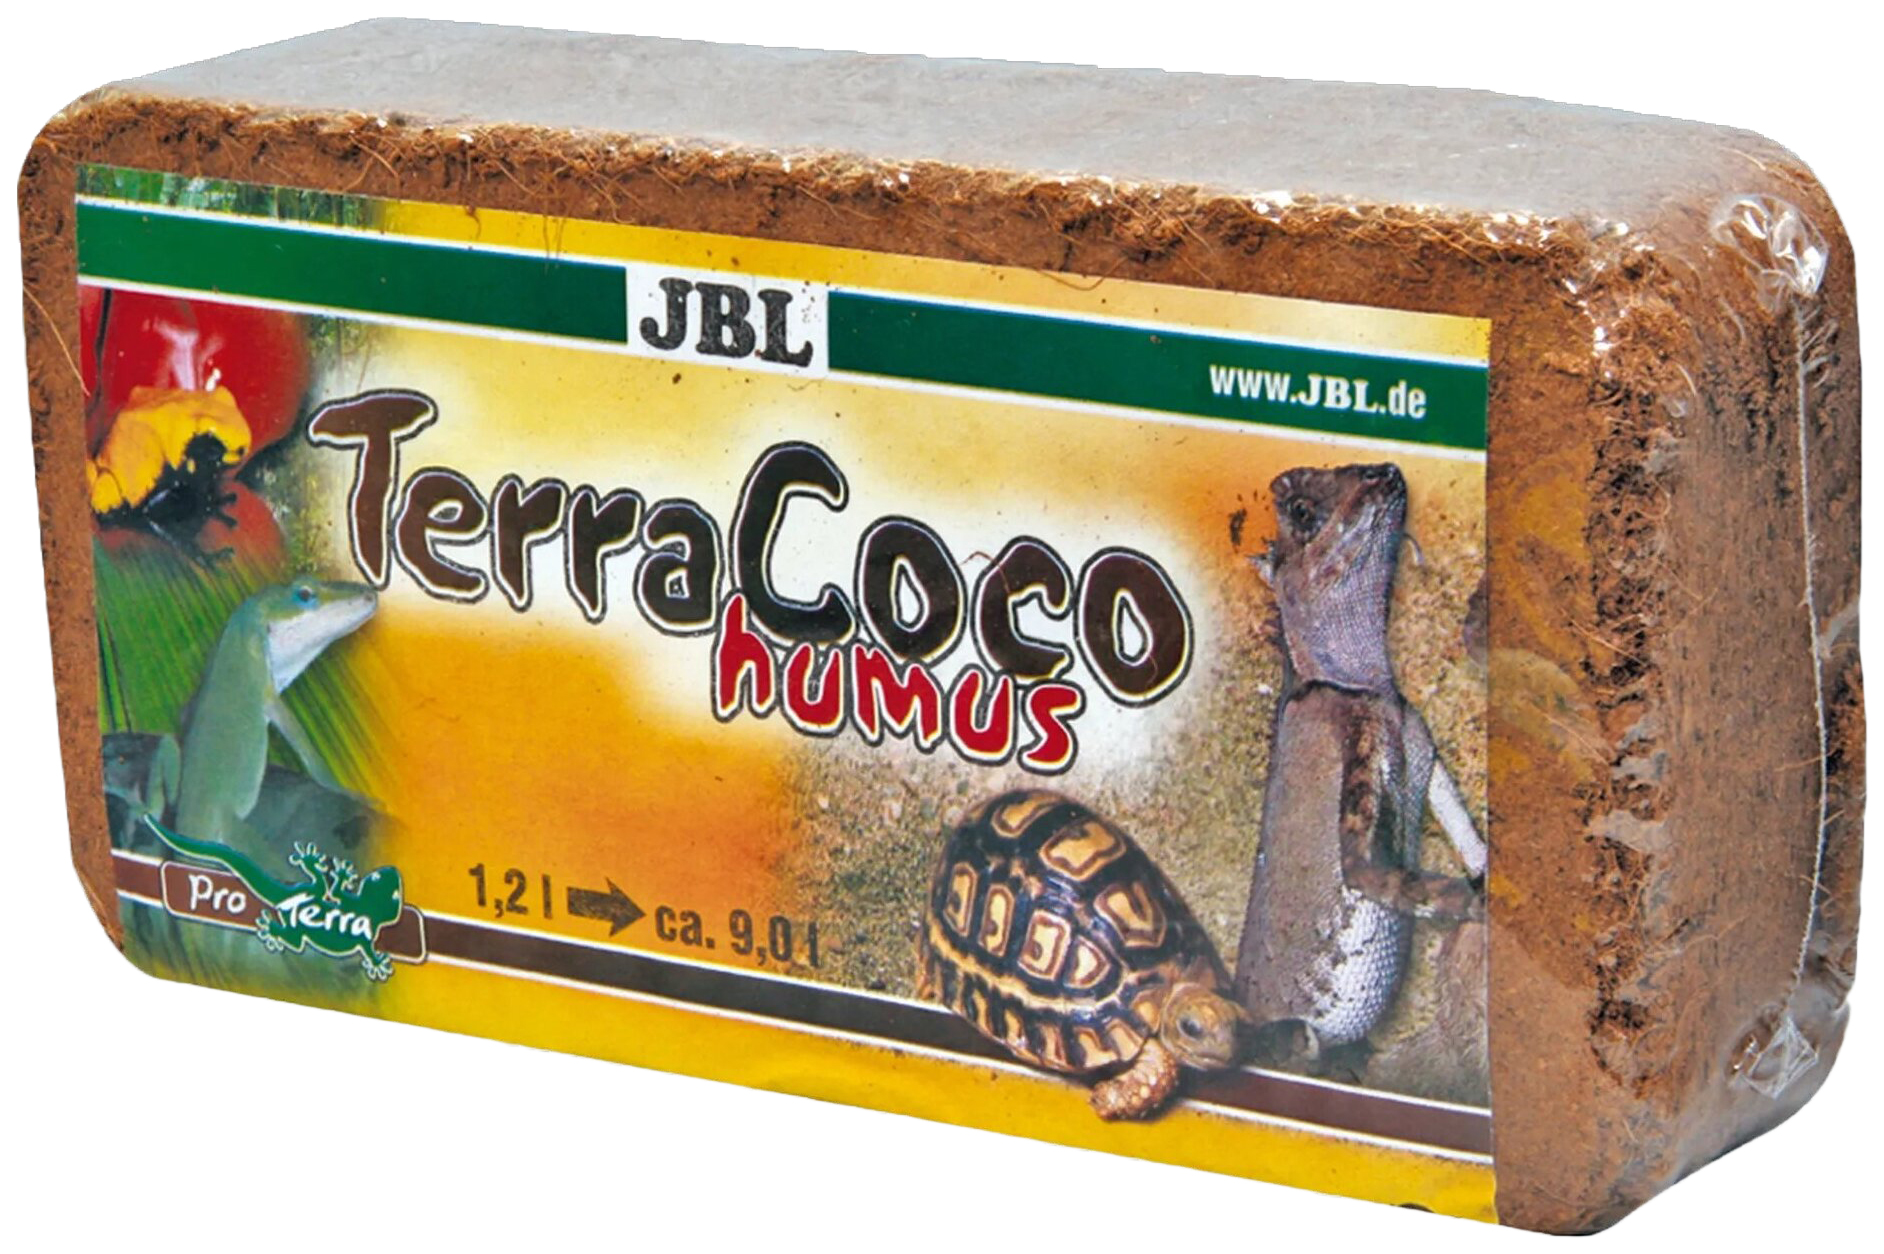 JBL TerraCoco Humus Натуральный кокосовой перегной, спрессованый в брикете, 650 гр